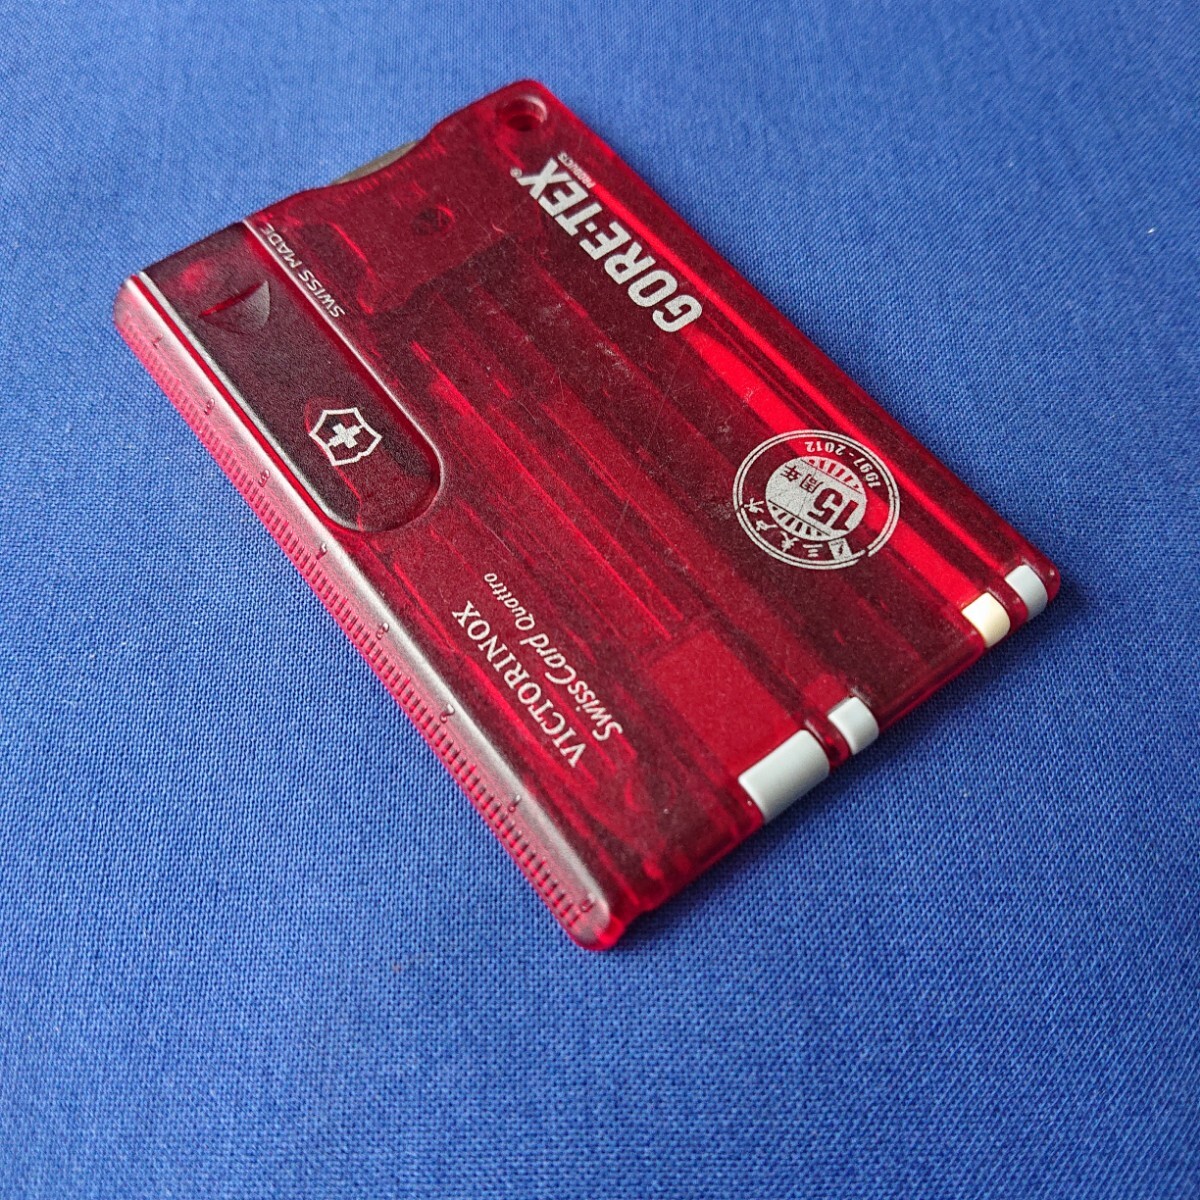 VICTORINOX(ビクトリノックス)Swiss Card Quattro (02)_画像8